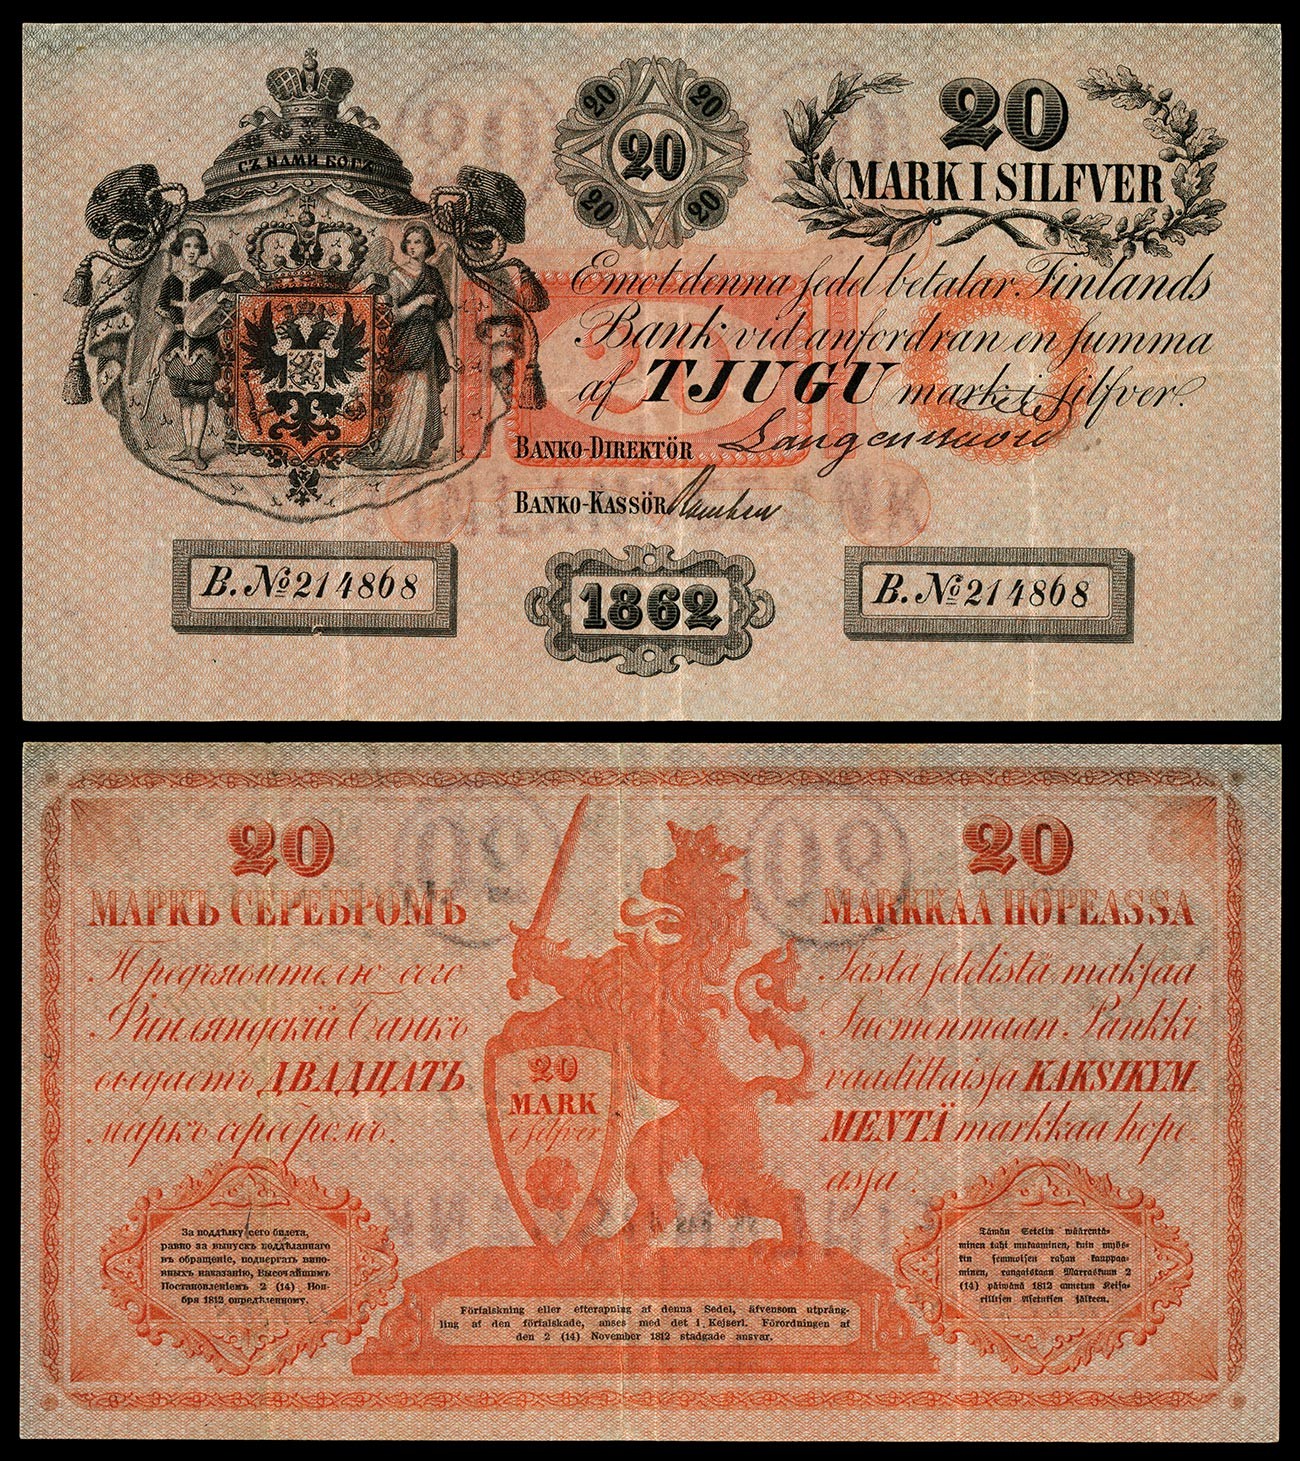 Billet de 20 marks de 1862, de la première émission du mark. Le billet est signé à la main par le directeur et le guichetier de la banque ; le texte à son dos est imprimé en finnois et en russe